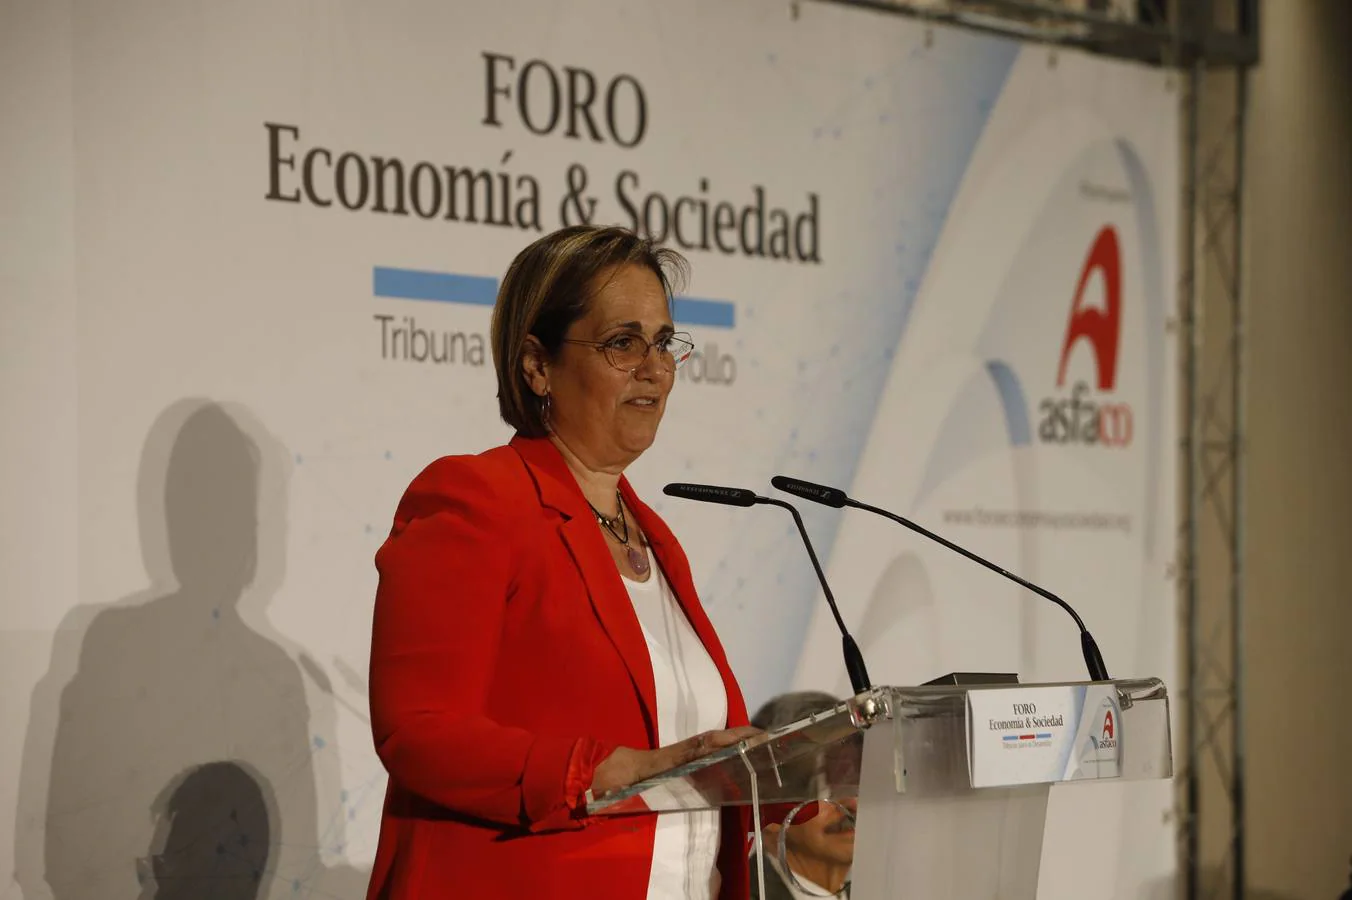 En imágenes, el foro Asfaco con el presidente de Enresa en Córdoba